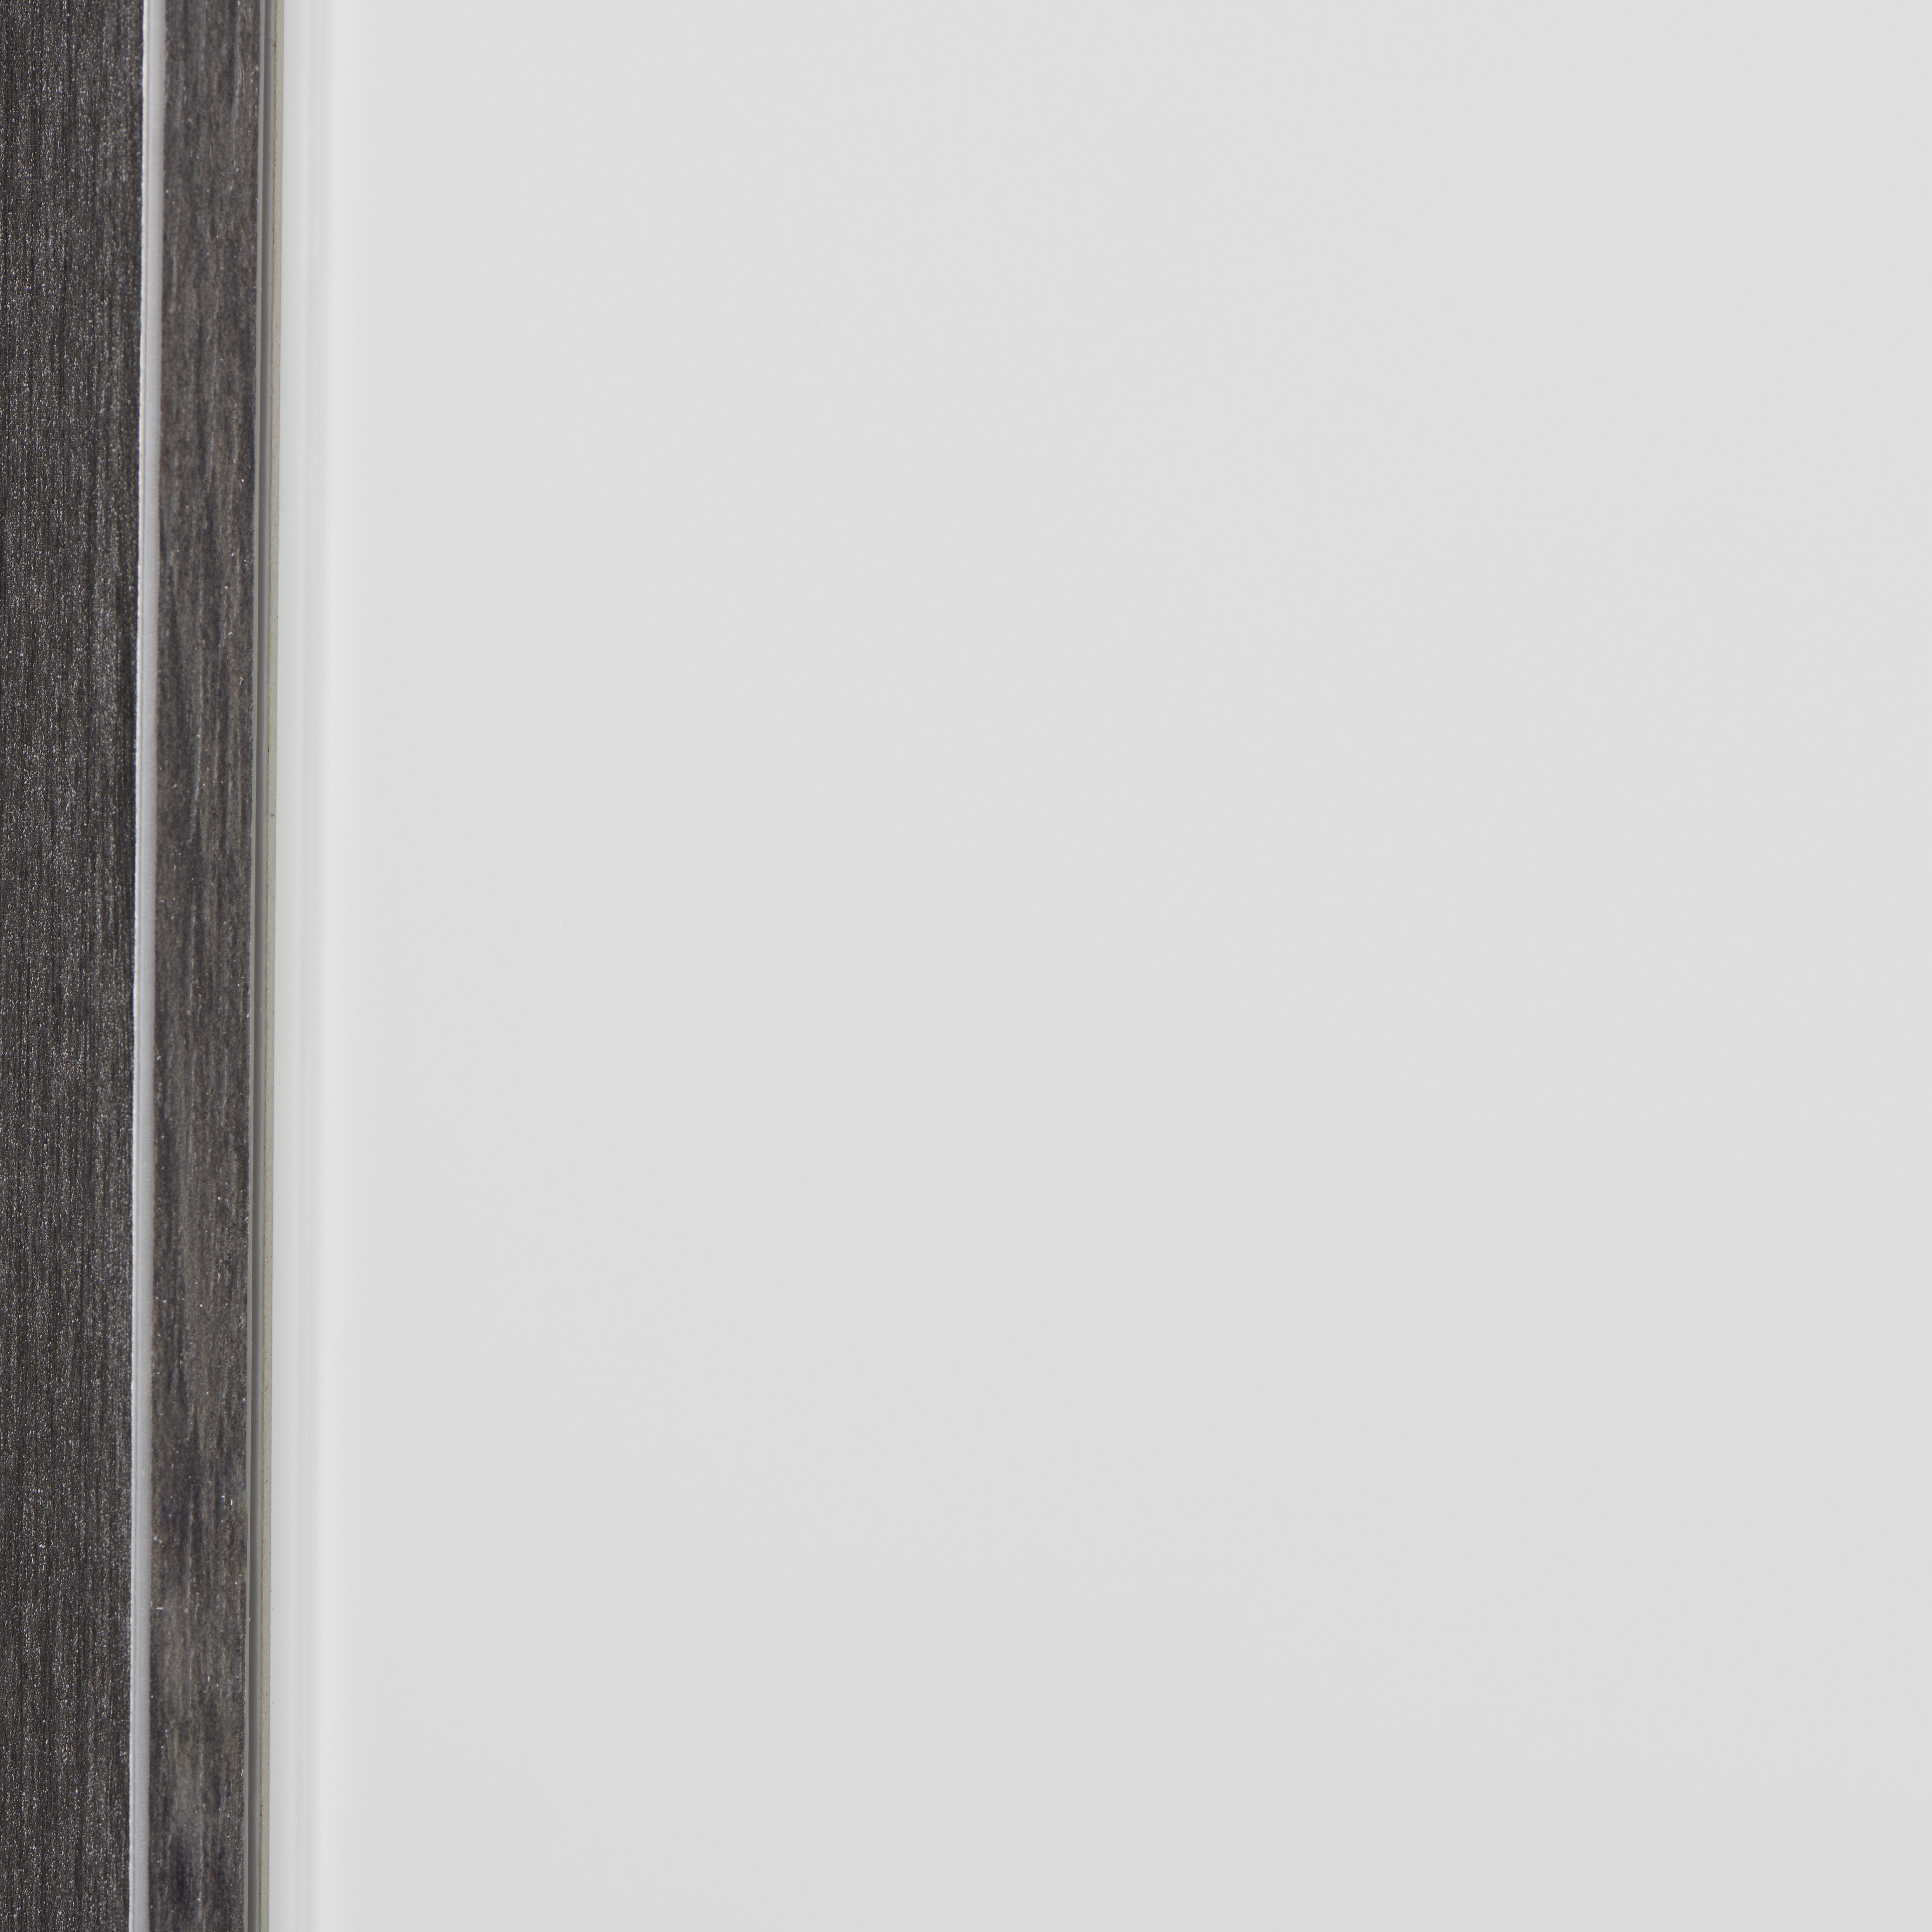 GARDEROBENSCHRANK Weiß, Eichefarben  - Chromfarben/Eichefarben, Design, Glas/Holzwerkstoff (55,8/199,1/37,3cm) - Voleo